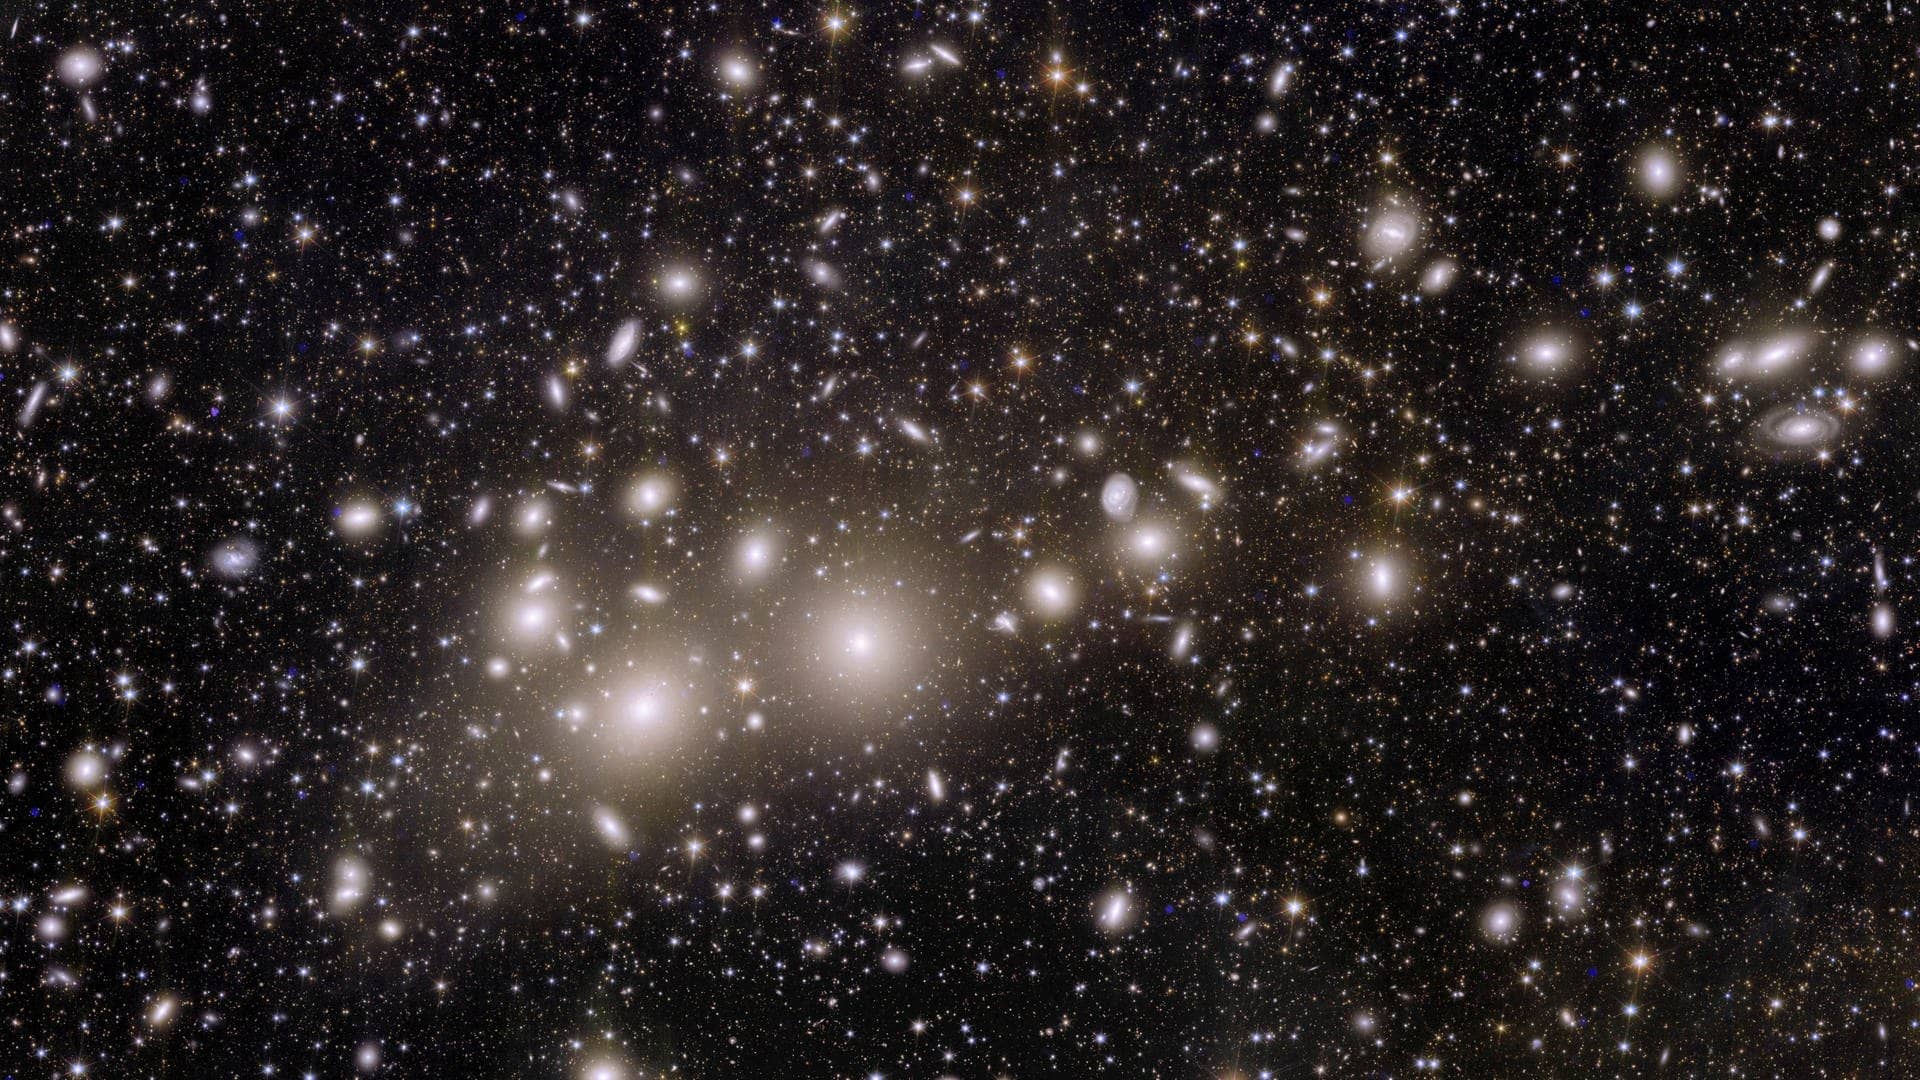 Jetzt geht's richtig weit raus: Im Vordergrund sieht man Galaxien (die hell leuchtenden Punkte) aus dem sogenannten „Perseus-Cluster“, einem Galaxienhaufen in mehr als 200 Millionen Lichtjahren Entfernung. Eigentlich ein Katzensprung: Im Hintergrund befinden sich mehr als 100.000 weitere Galaxien, die bis zu zehn Milliarden Lichtjahre (!) entfernt sind und bislang noch nie beobachtet wurden. Die ESA sagt: Das ist erst der Anfang. Mehr als eine Million Bilder wie dieses soll „Euclid" in den kommenden sechs Jahren aufnehmen. 